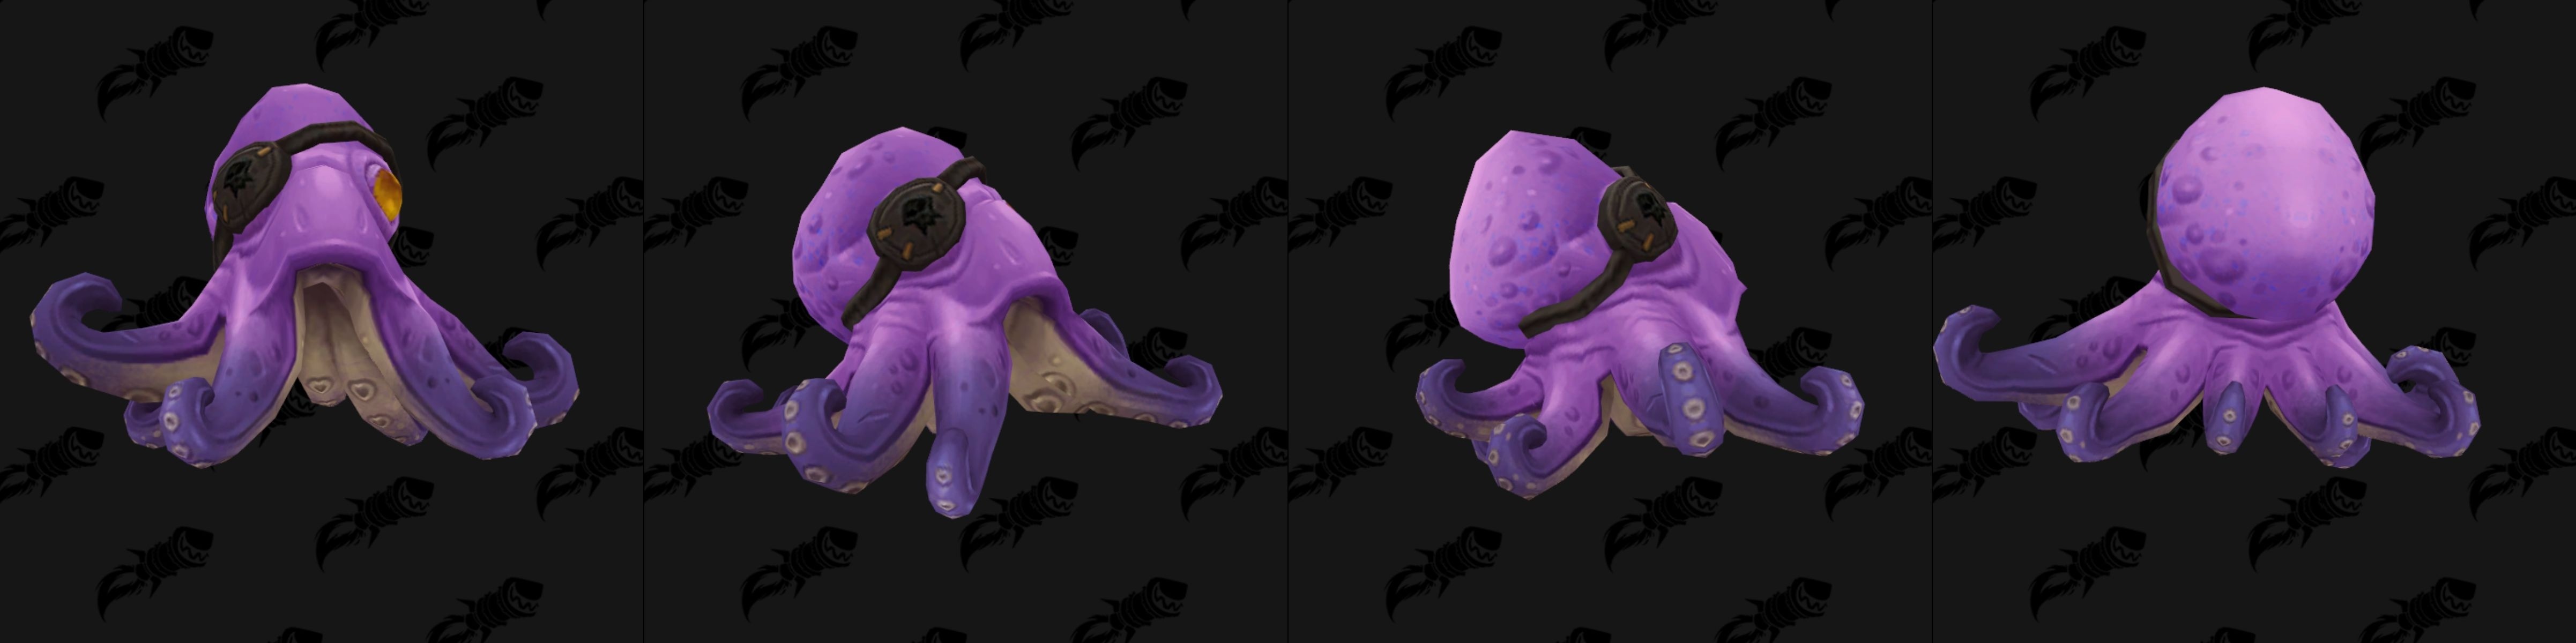 Bébé pieuvre dans Battle for Azeroth coloris violet